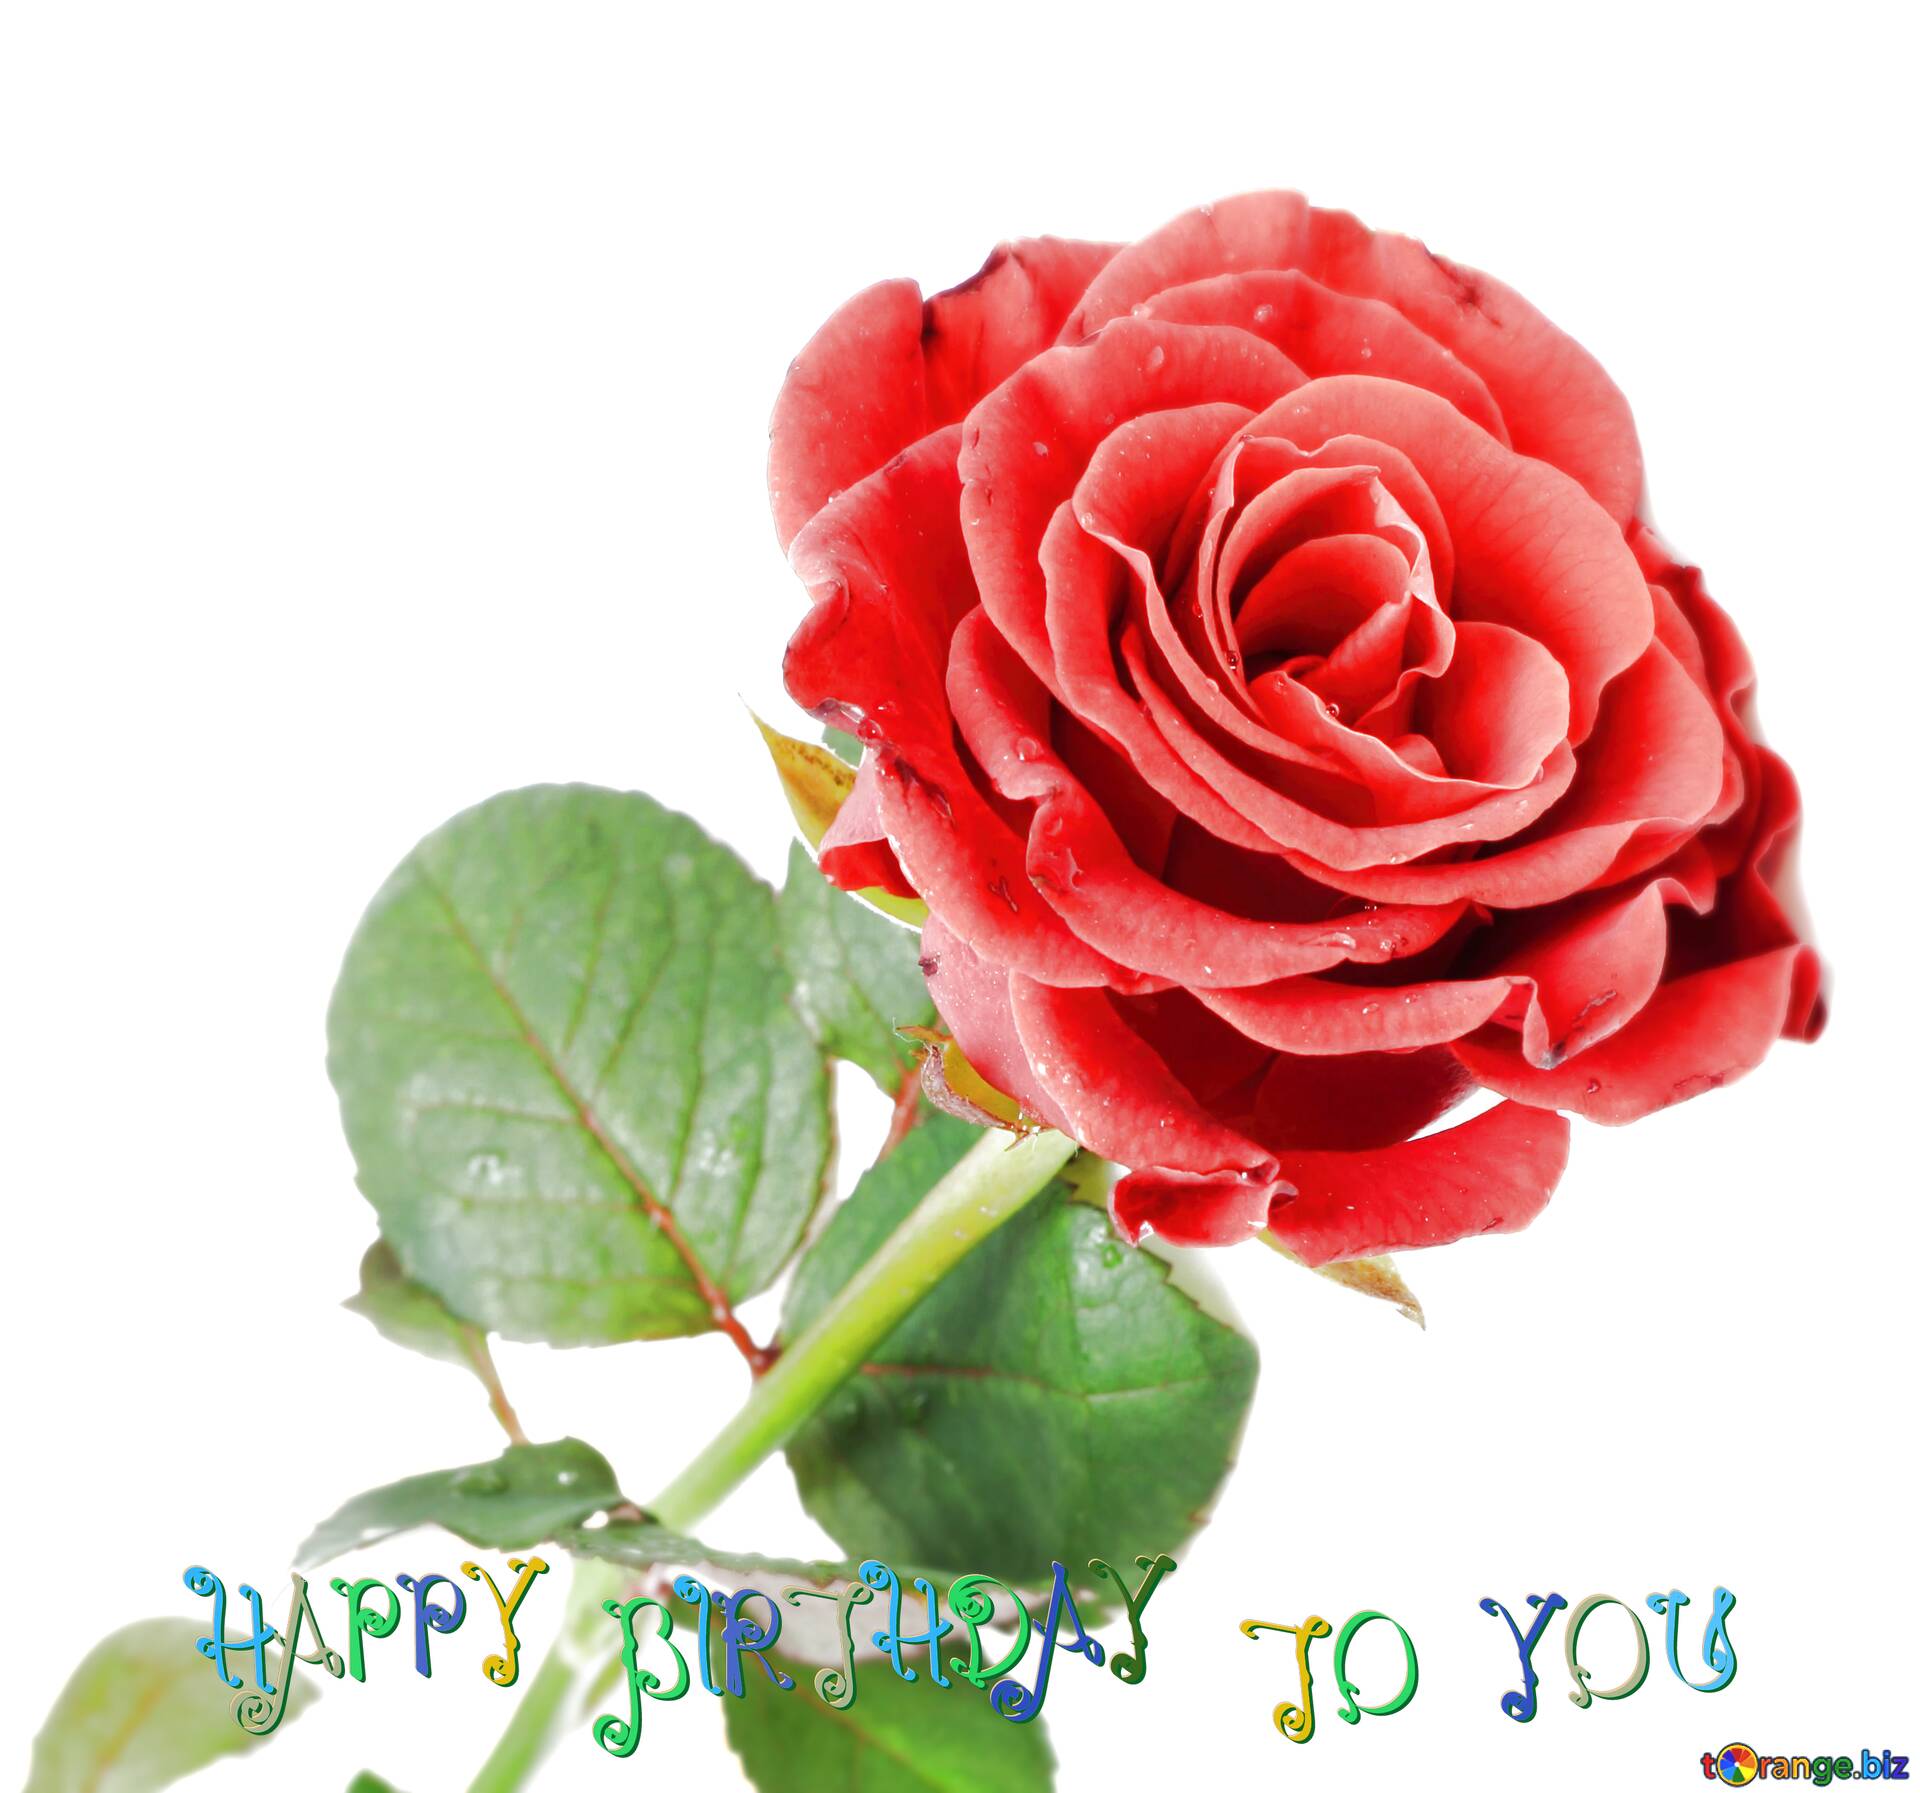 1920x1793 Tải xuống Hình ảnh miễn phí Màu đỏ Hoa hồng xinh đẹp Chúc mừng sinh nhật trên CC BY Giấy phép Hình ảnh miễn phí Fx №207565